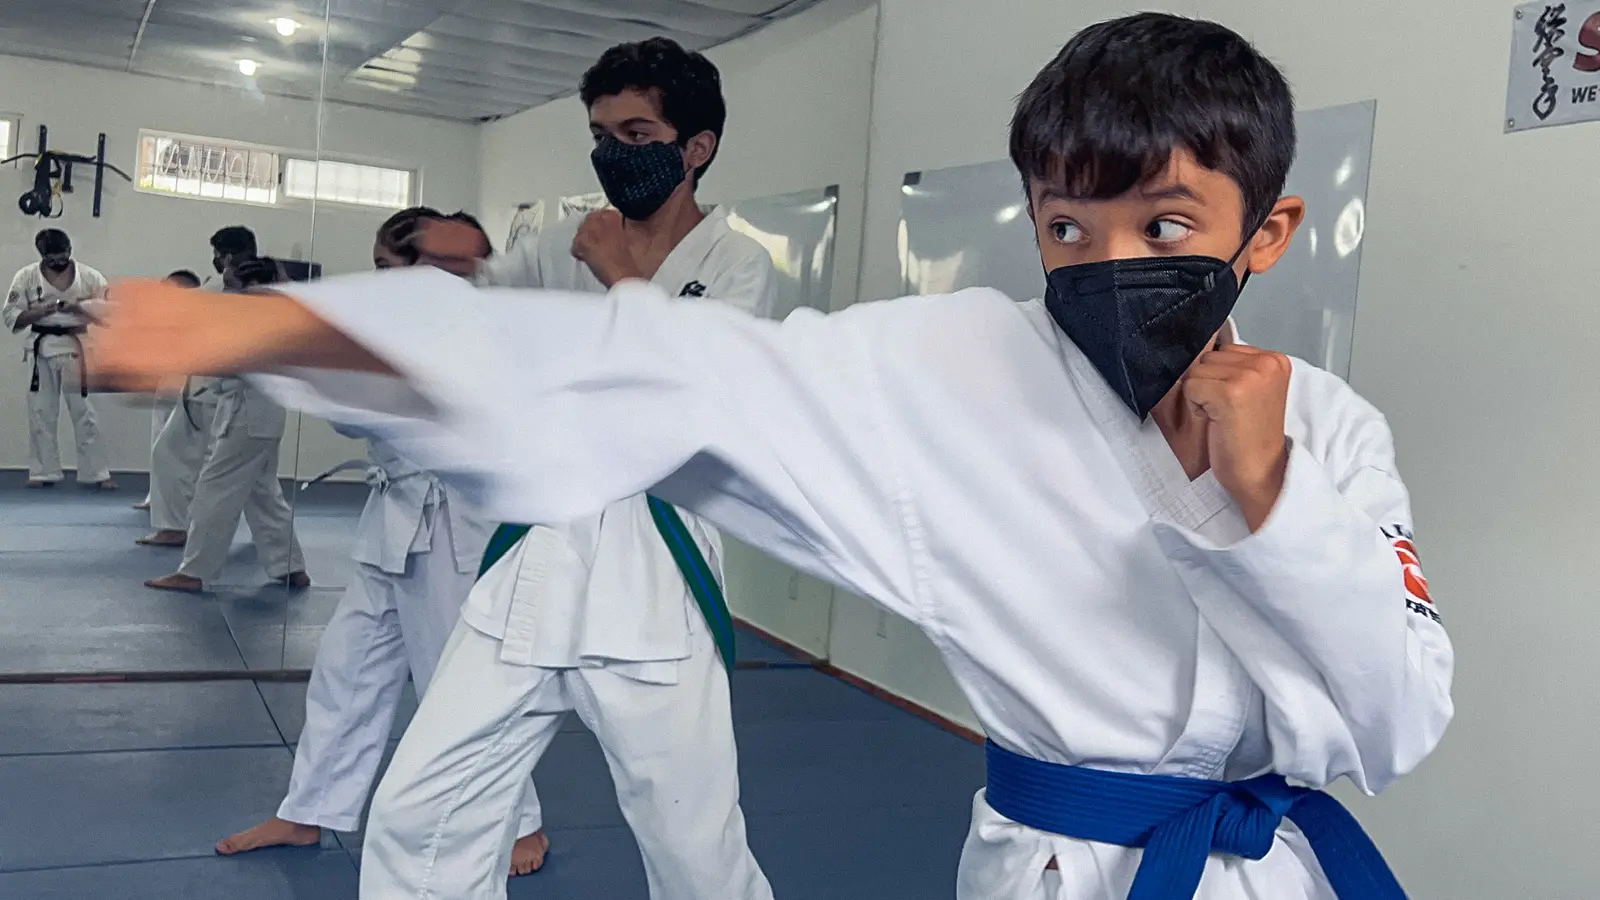 Niño practicando karate realizando un golpe con la mano derecha